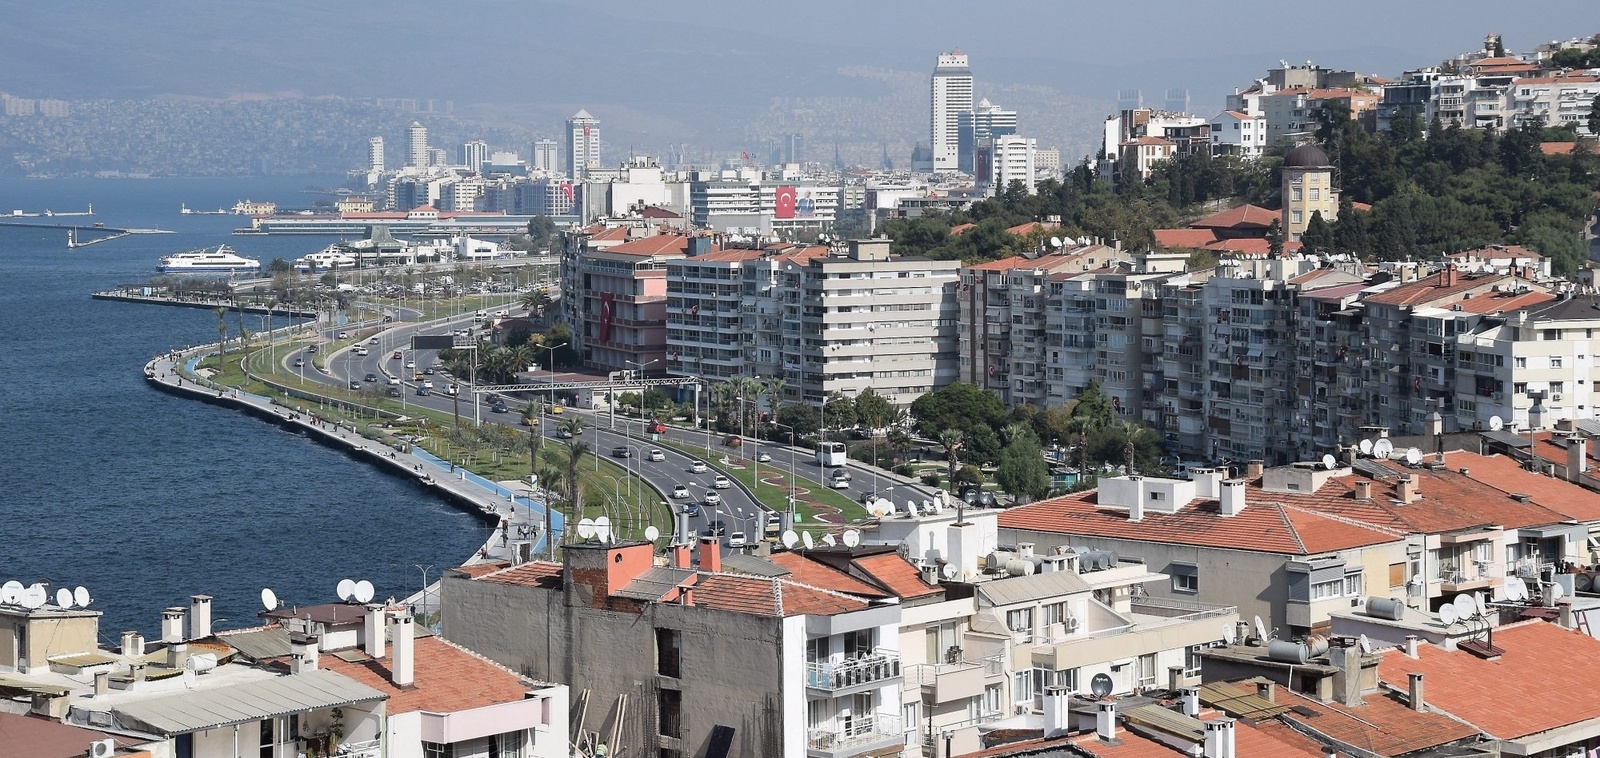 Izmir breder ut sig på ömse sidor av havsviken. Den hästskoformade formen på staden gör att man inte riktigt inser hur stor den är.